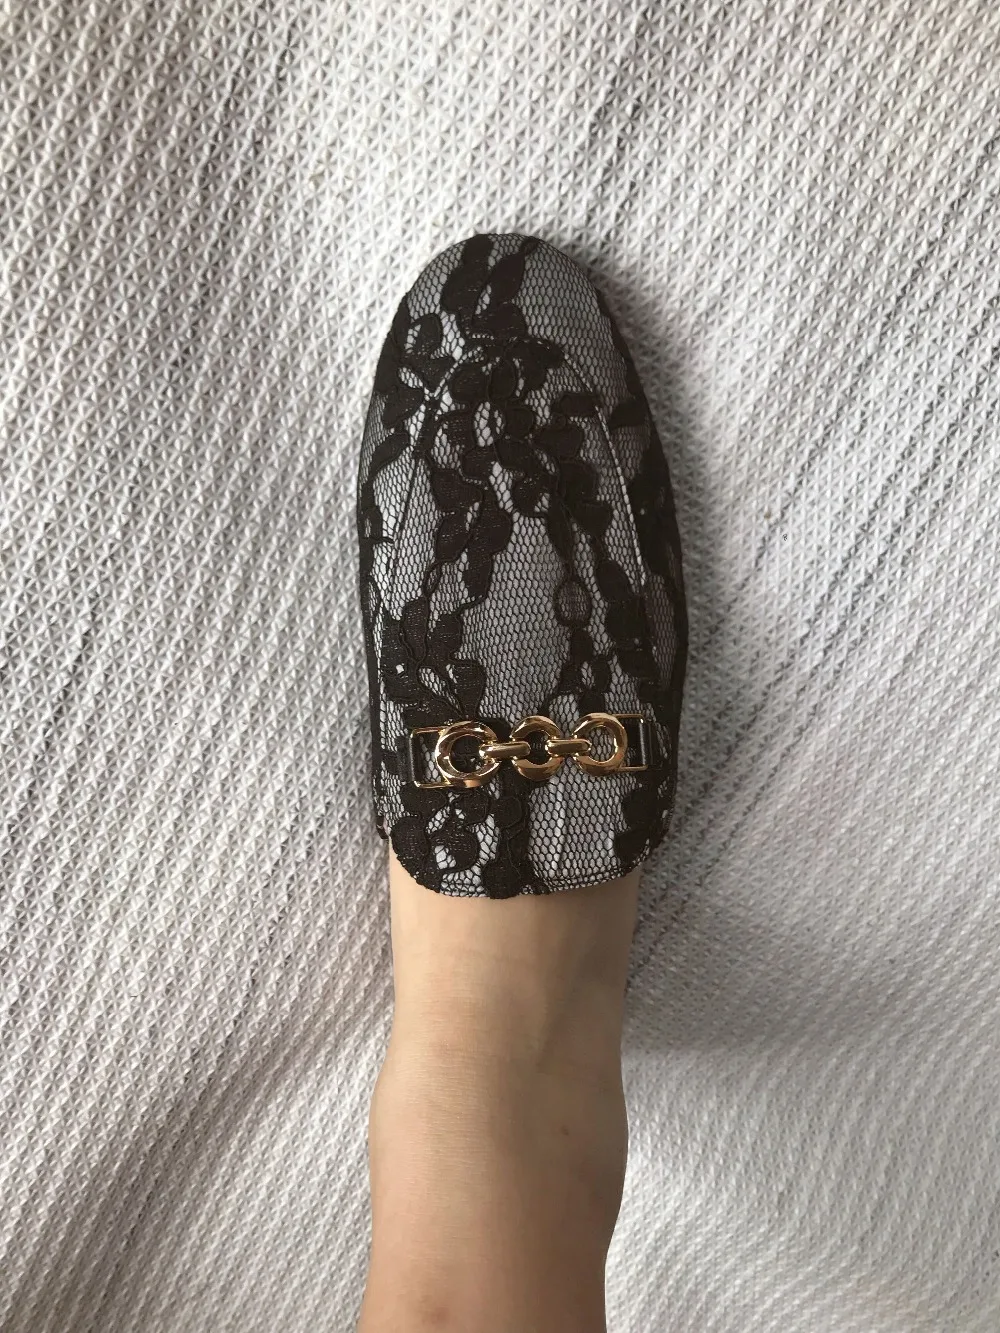 Lenkisen/ г.; Шлепанцы из натуральной кожи без застежки; шлепанцы с вышивкой в восточном стиле; модная женская уличная обувь с металлическим украшением